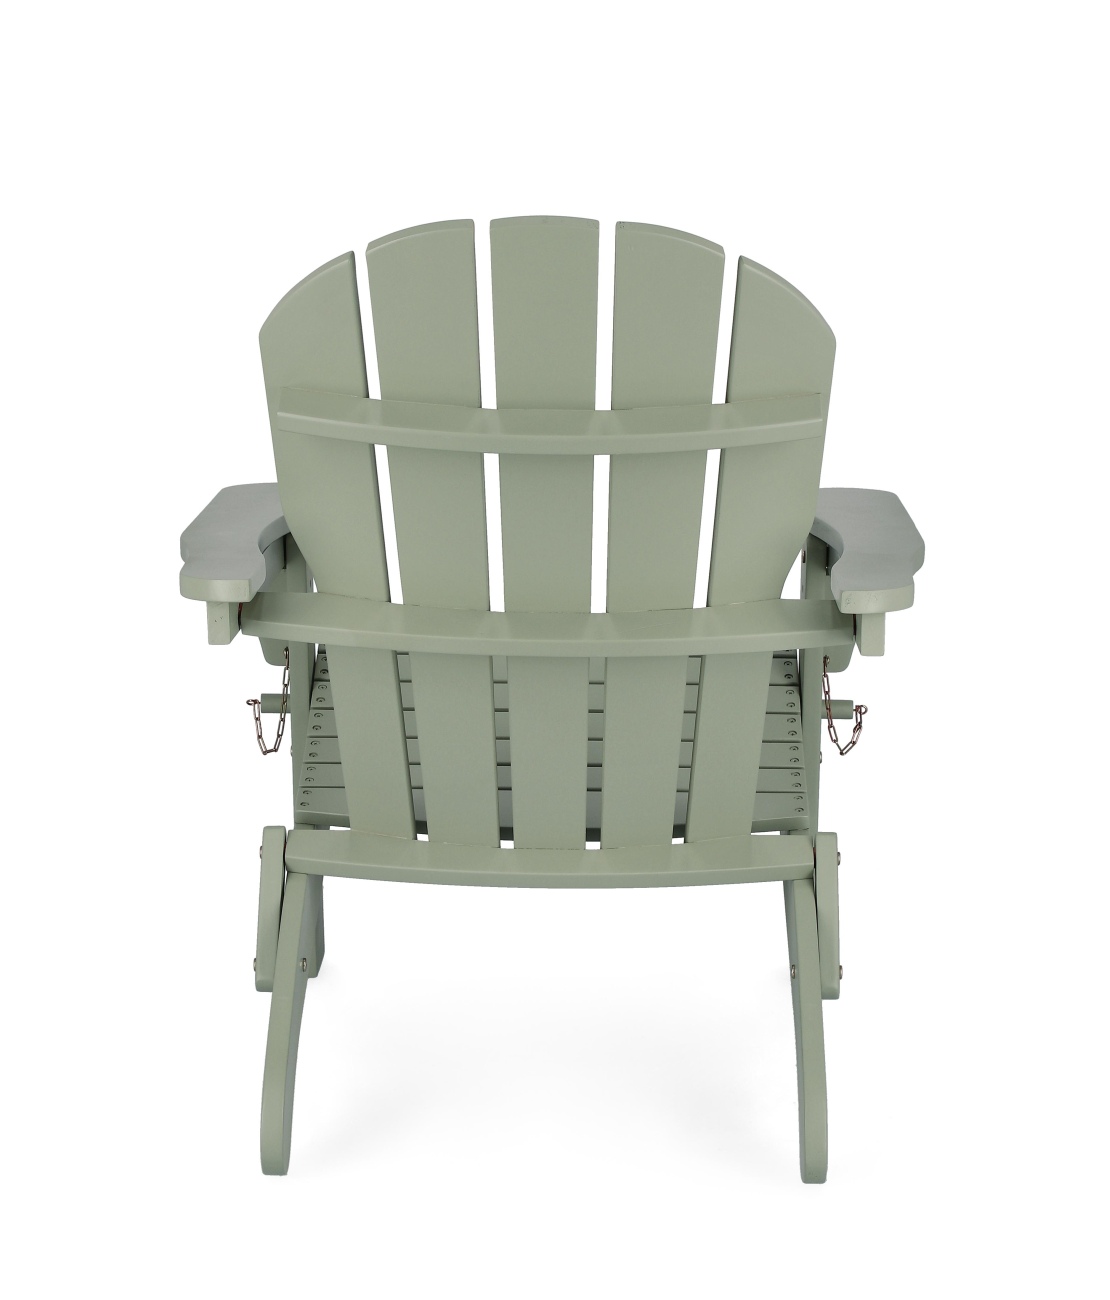 Der Gartensessel Filadelfia überzeugt mit seinem modernen Design. Gefertigt wurde er aus Akzienholz, welches einen Salbei Farbton besitzt. Das Gestell ist auch aus Akazienholz. Der Gartensessel besitzt eine Sitzhöhe von 37 cm und ist klappbar.